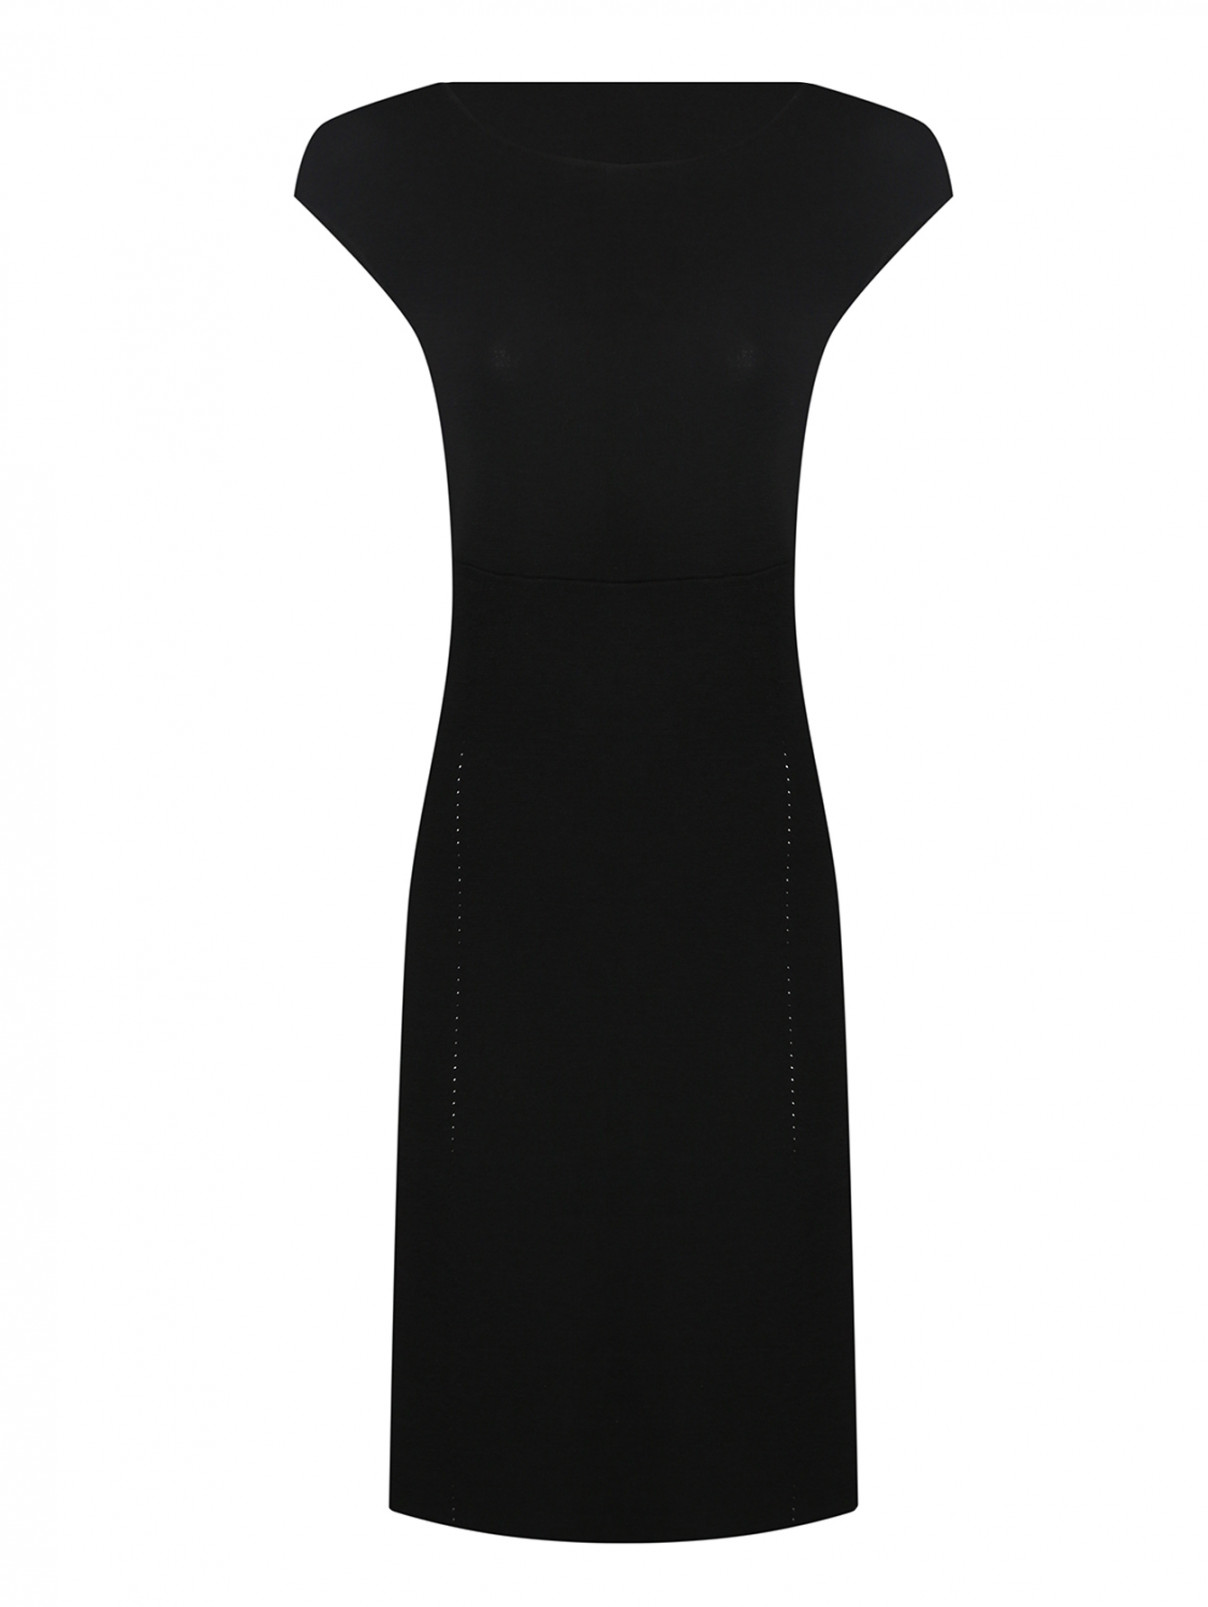 Трикотажное платье из шерсти Luisa Spagnoli  –  Общий вид  – Цвет:  Черный